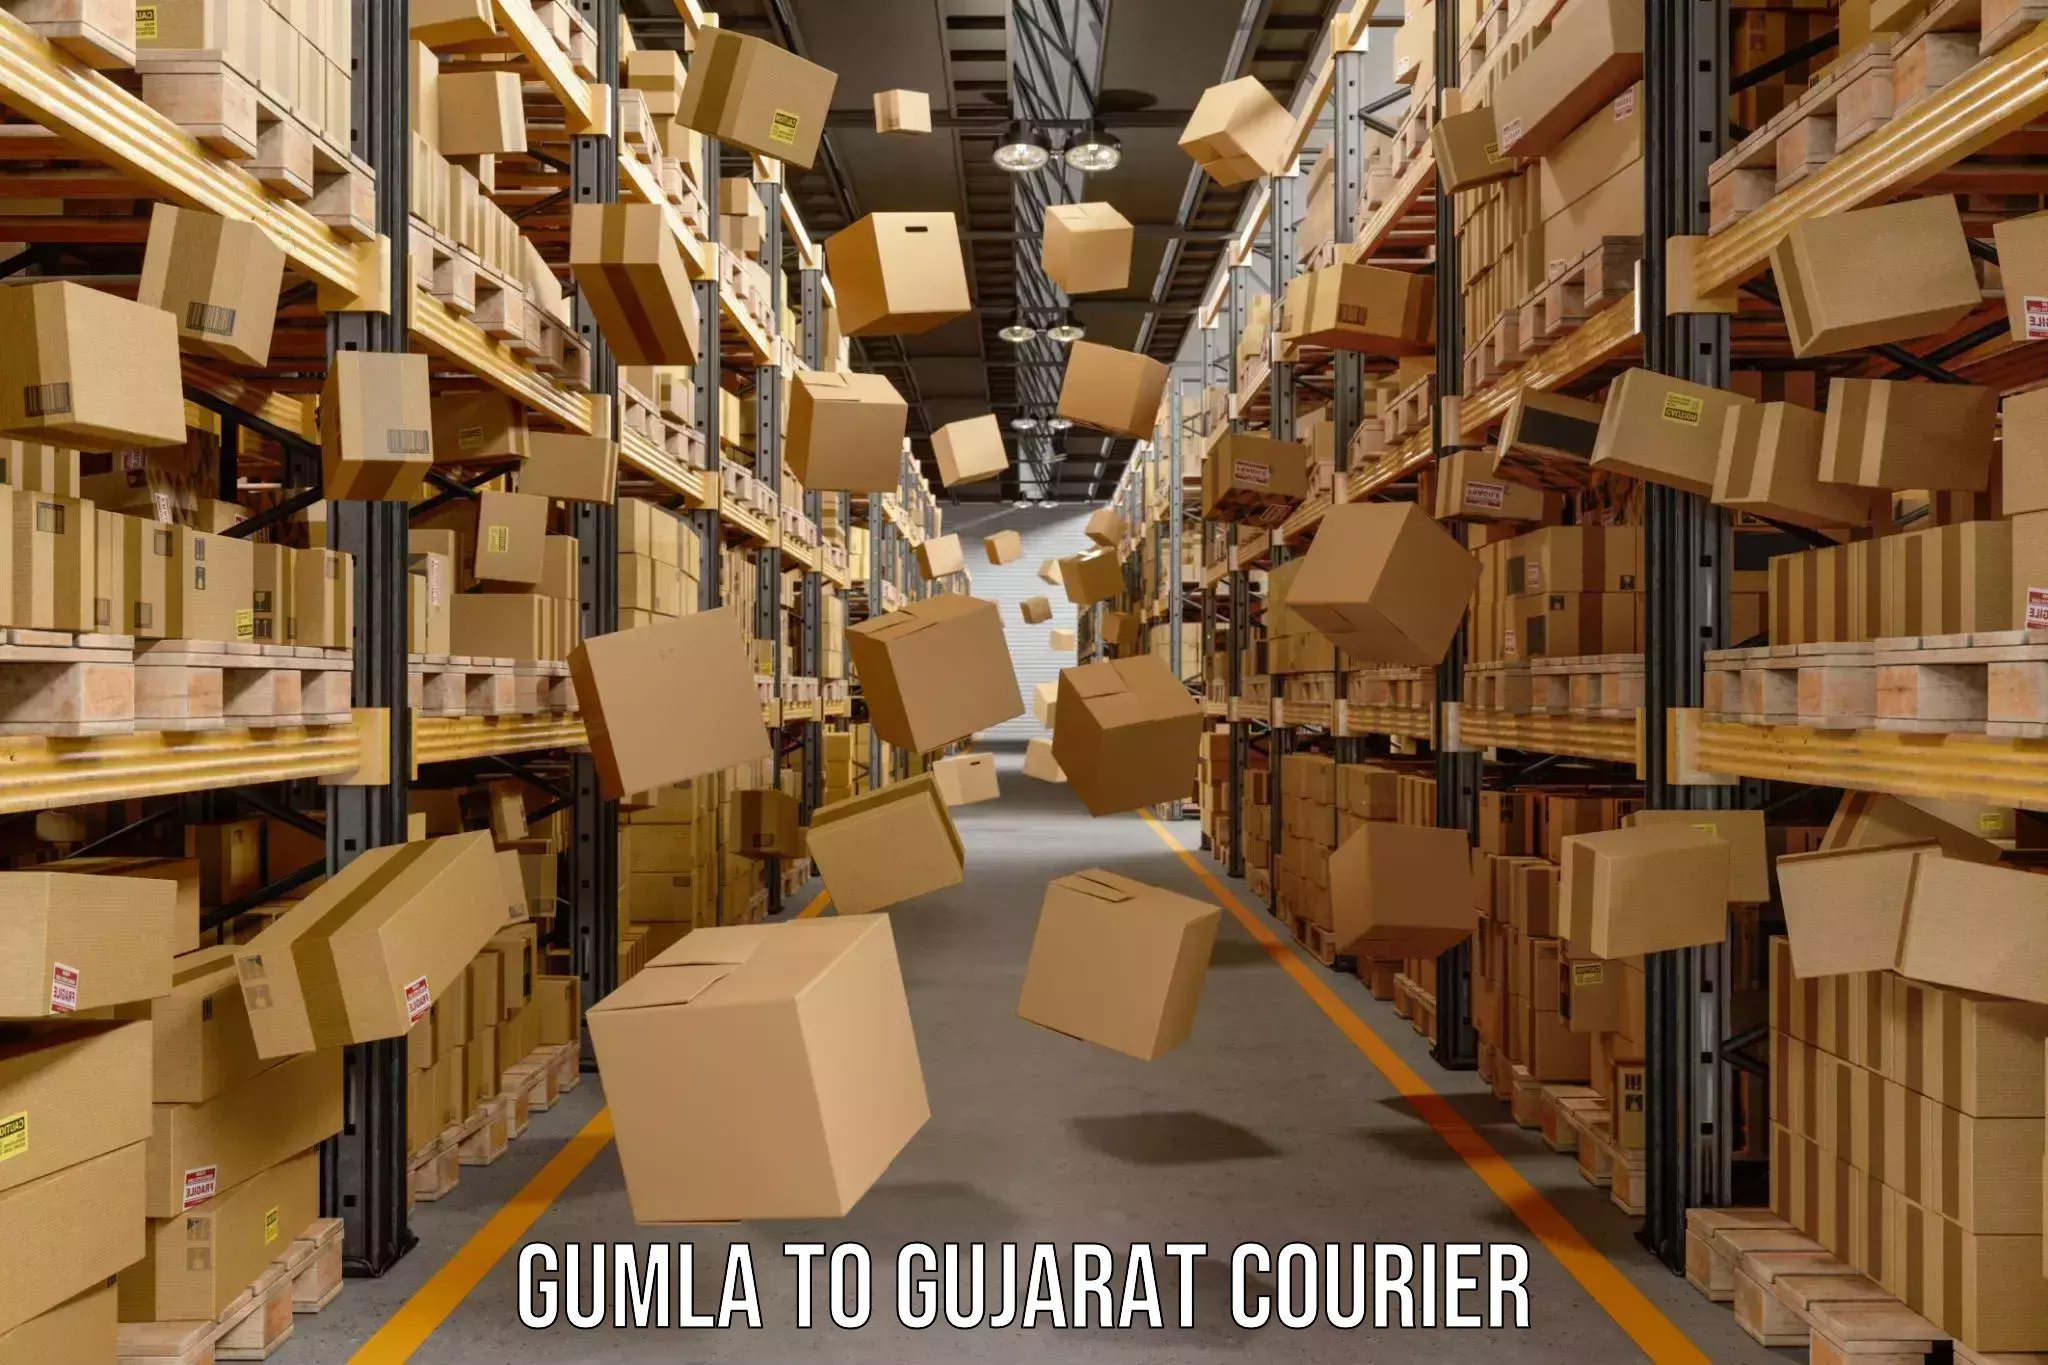 Modern courier technology Gumla to Gujarat